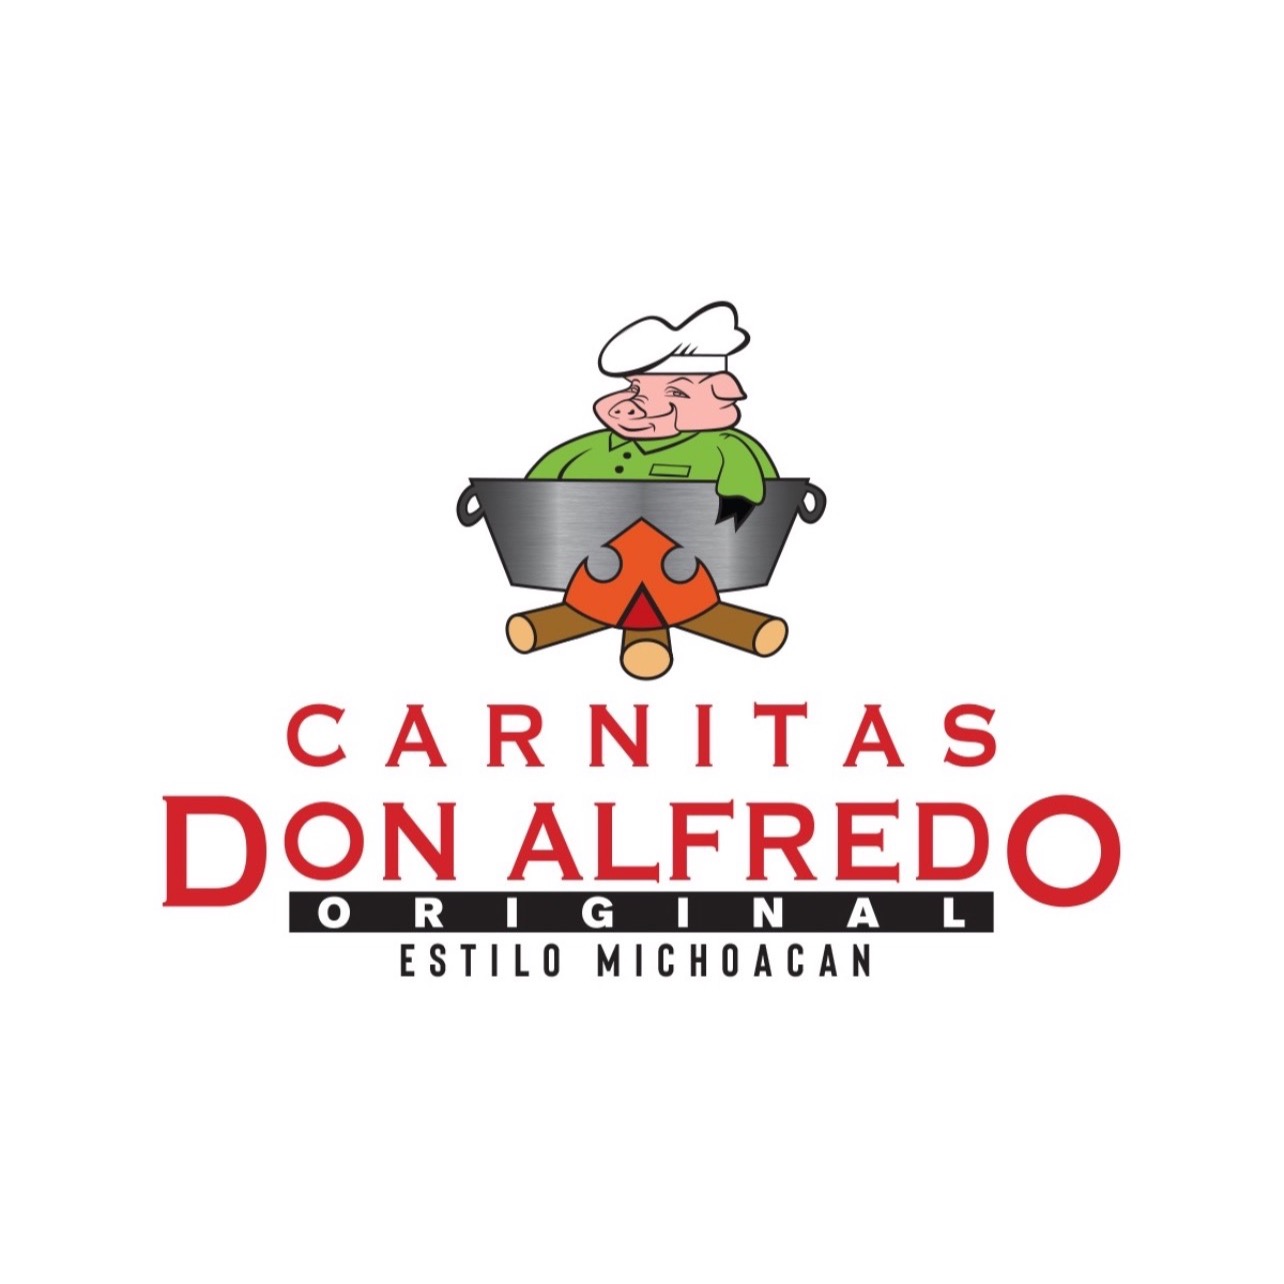 Carnitas Don Alfredo Original - Melrose Park, IL 60160 - (708)338-0844 | ShowMeLocal.com